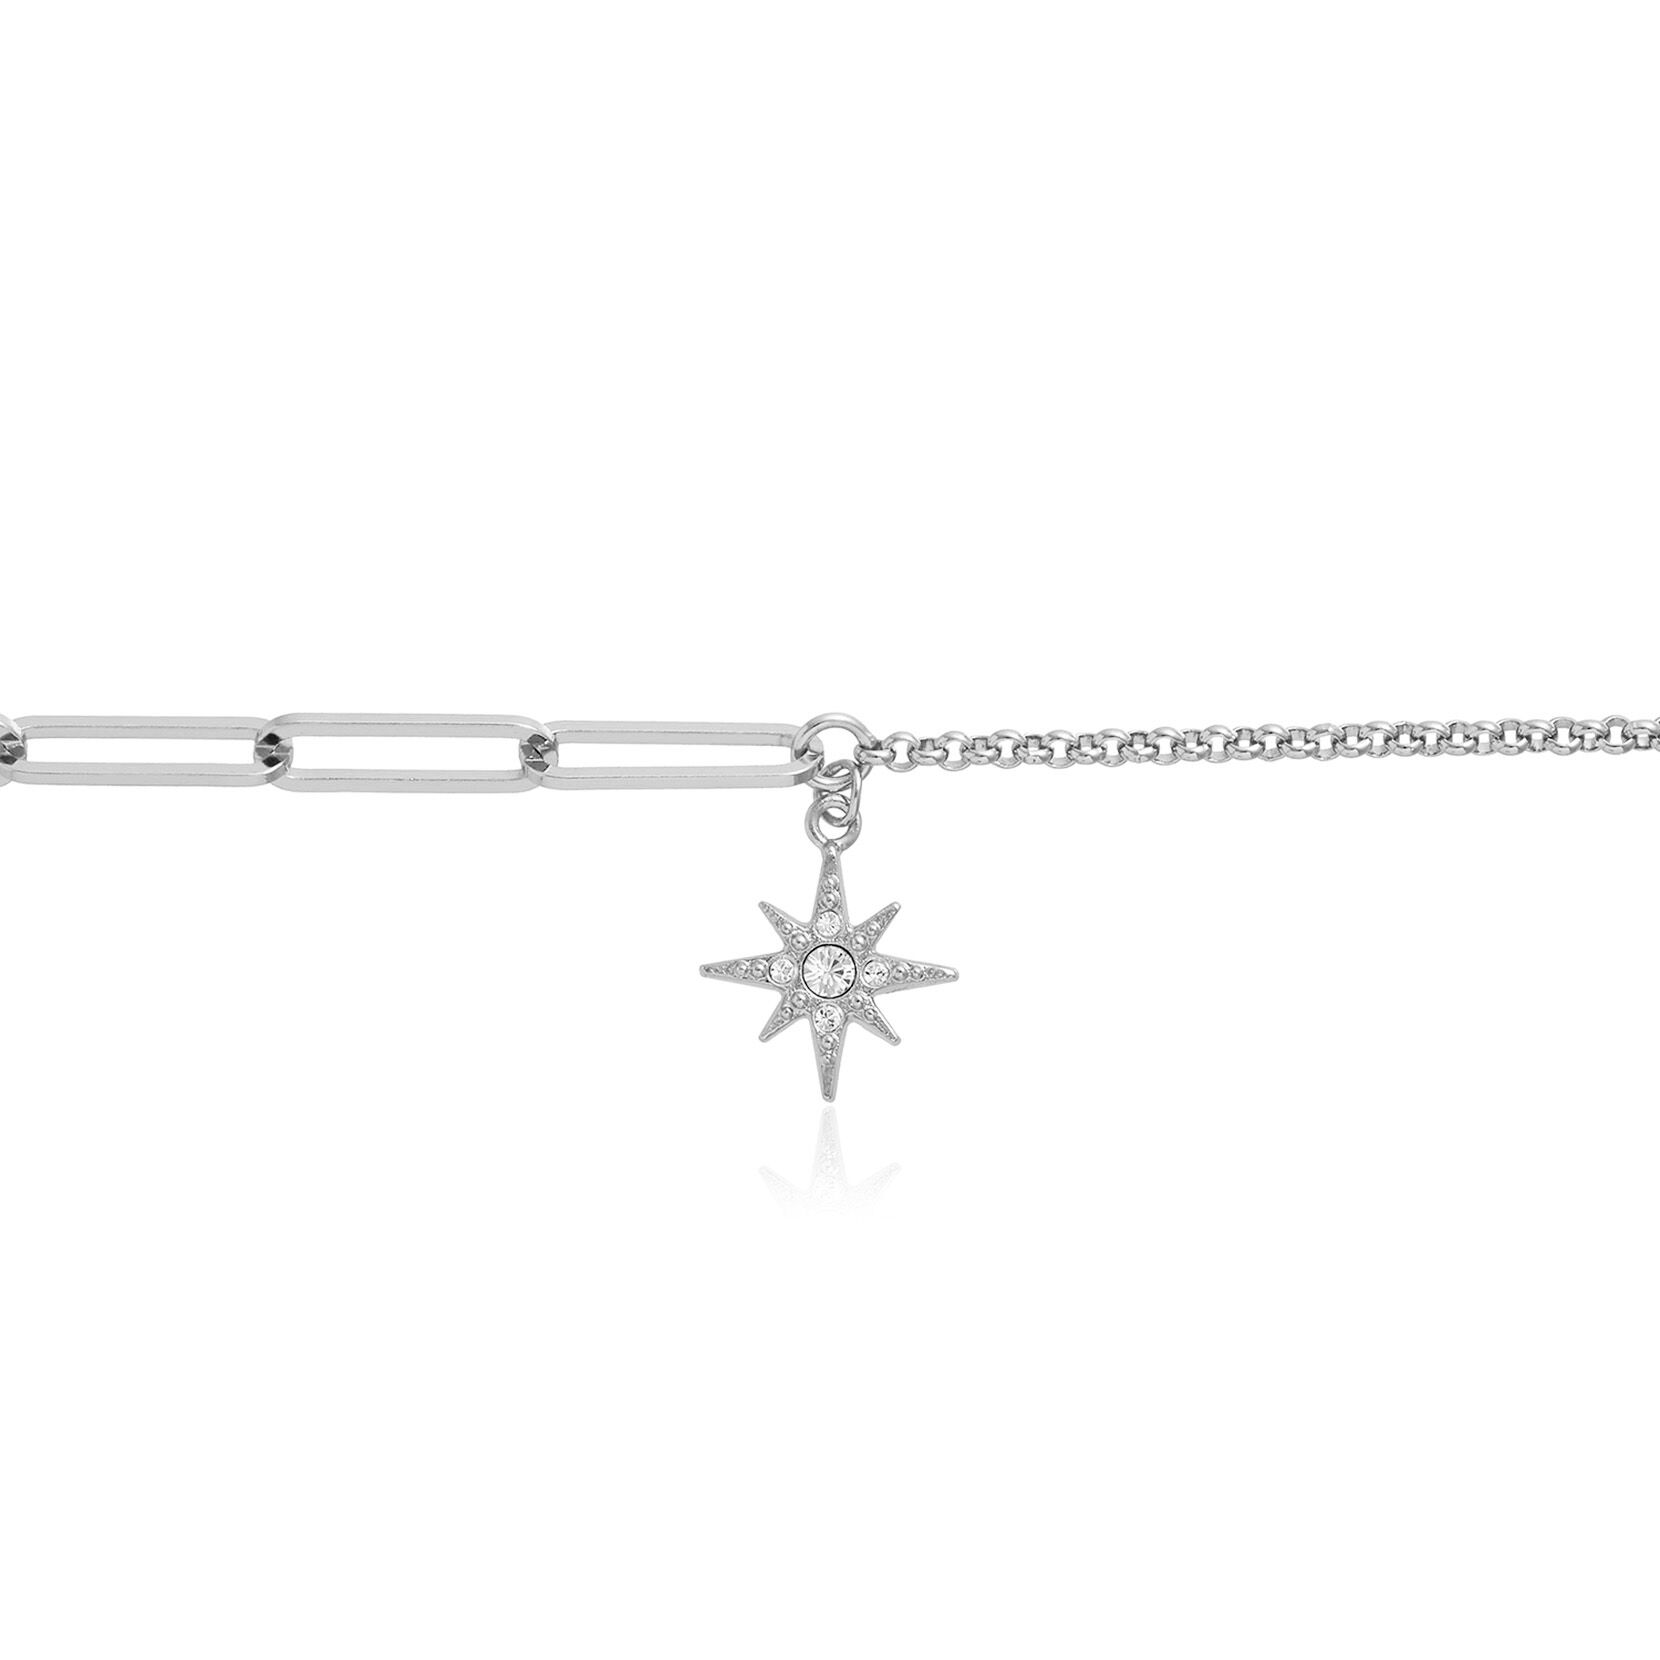 Celestial North Star Mismatch Bracelet Silver